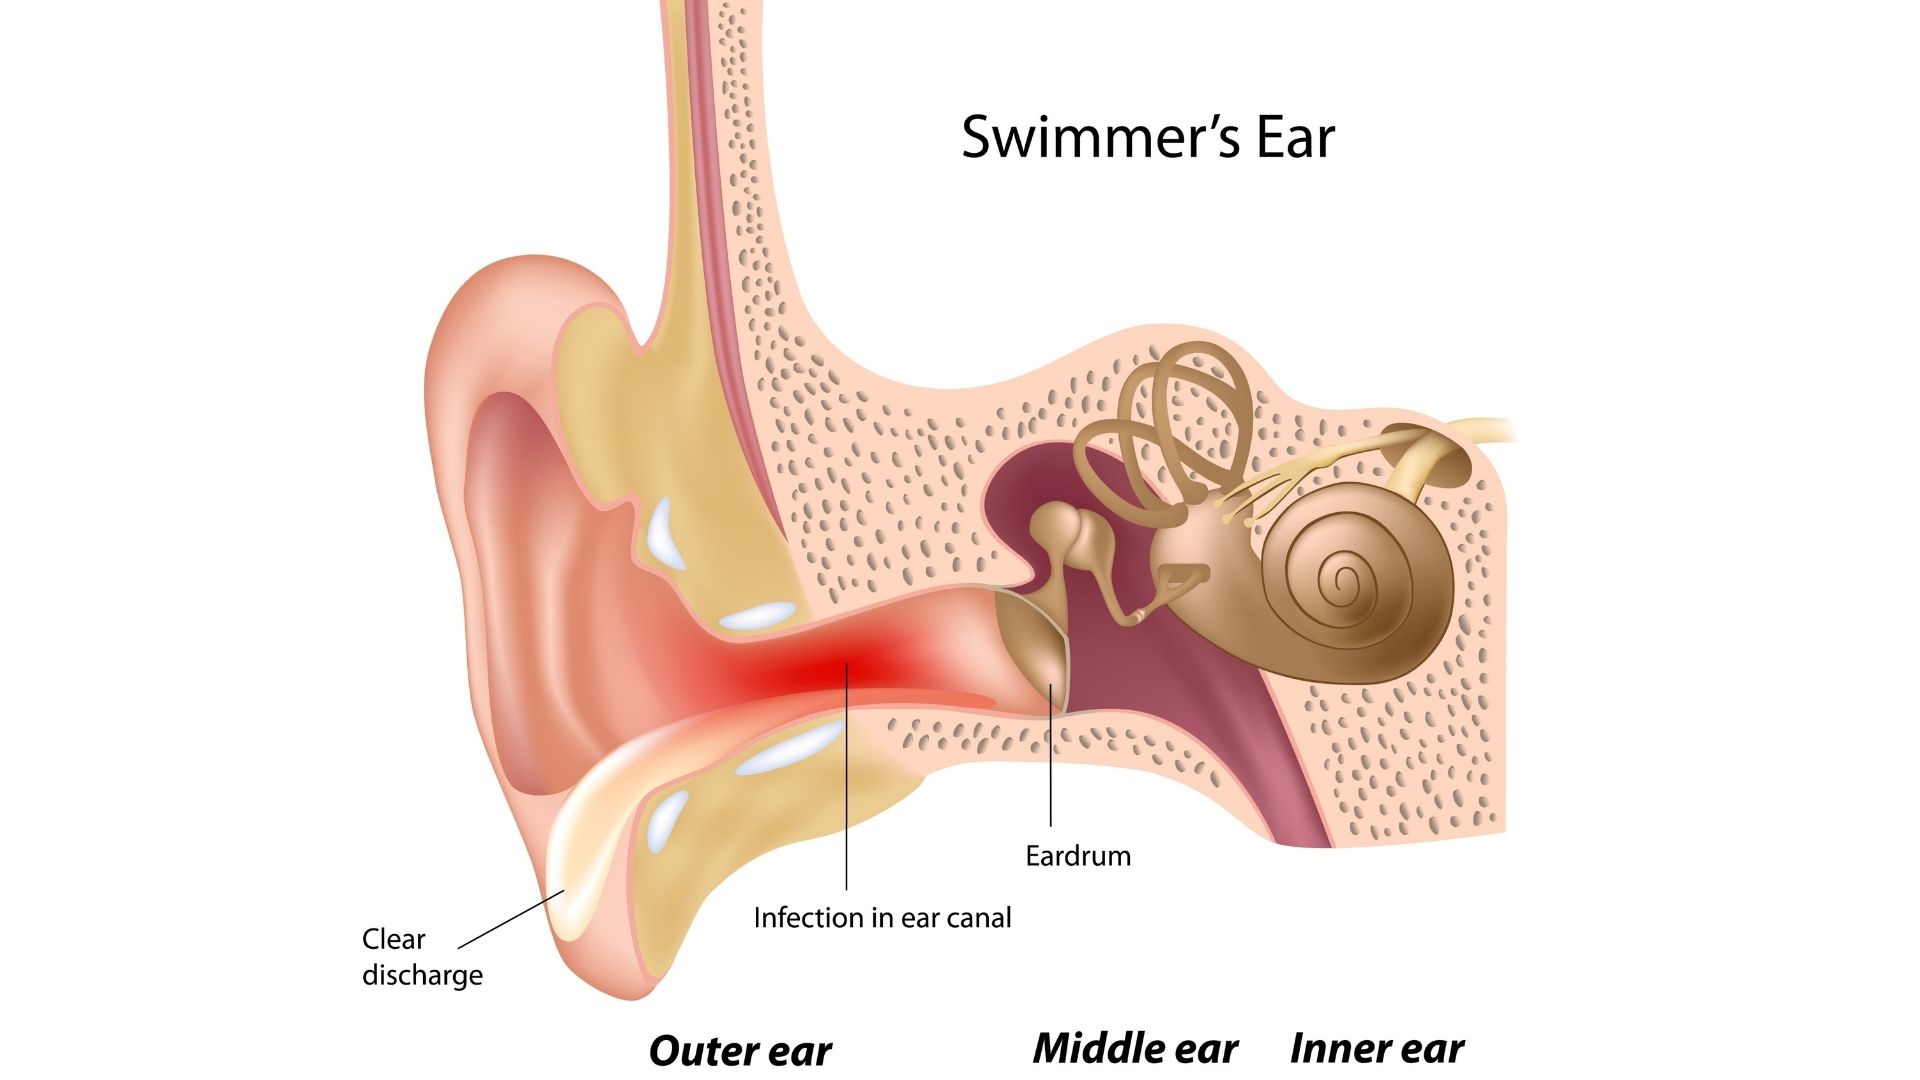 При открытии рта болит ухо